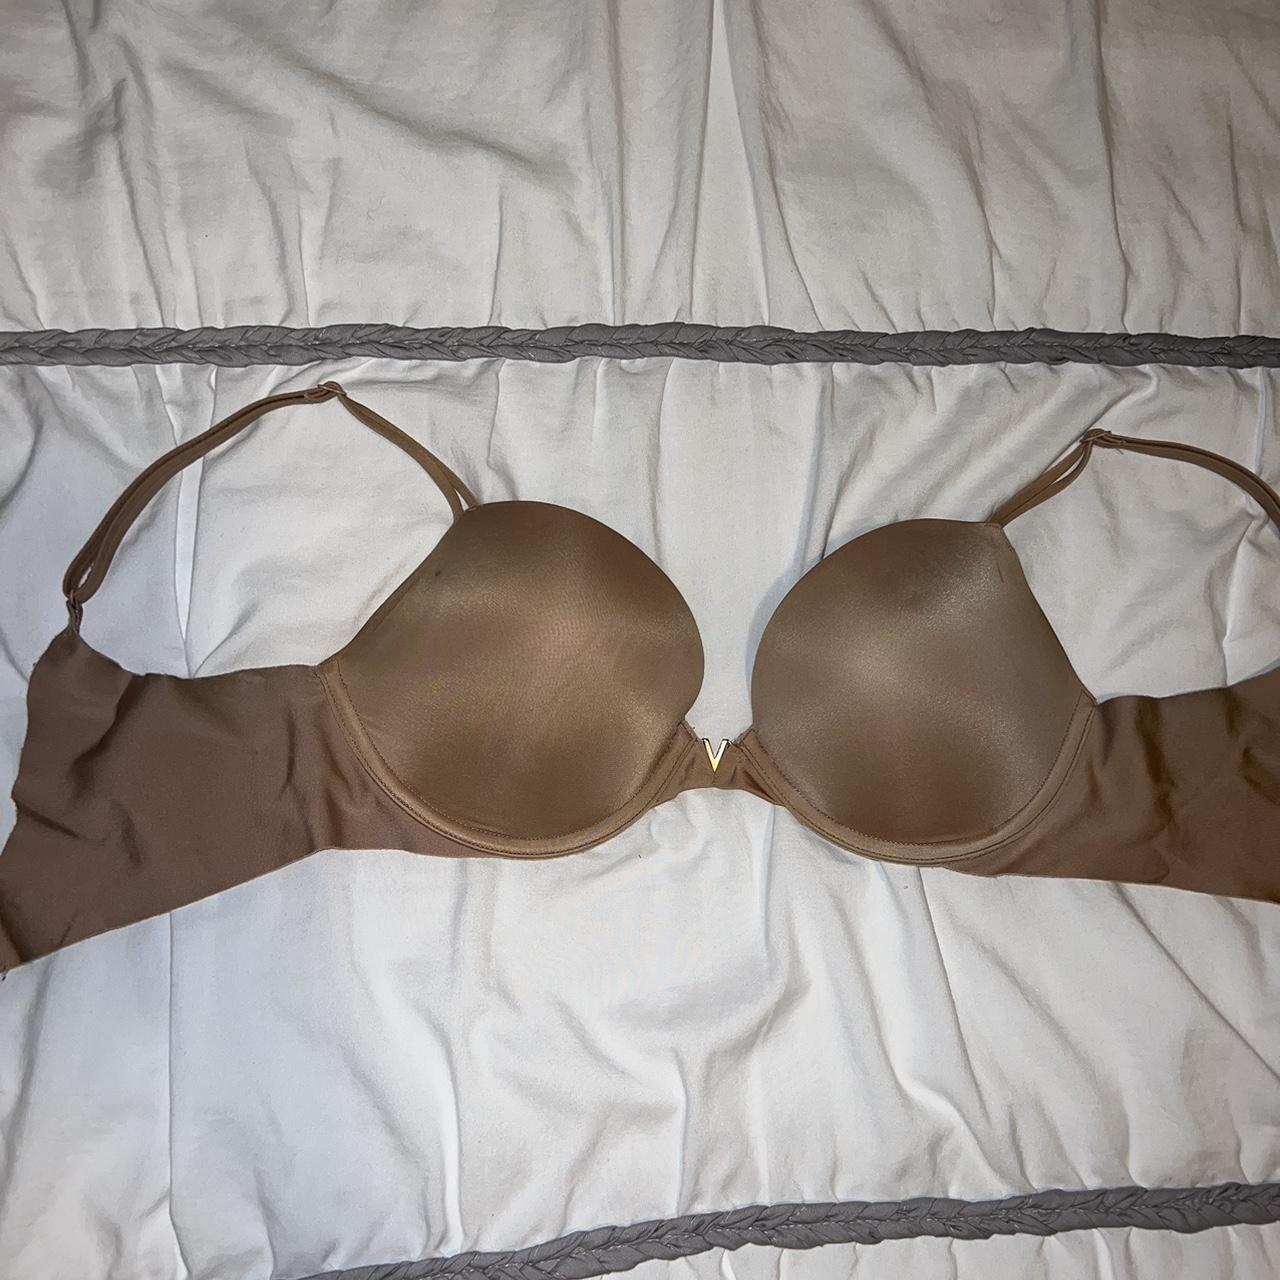 Nude 32D Victoria’s Secret push-up bra. Light